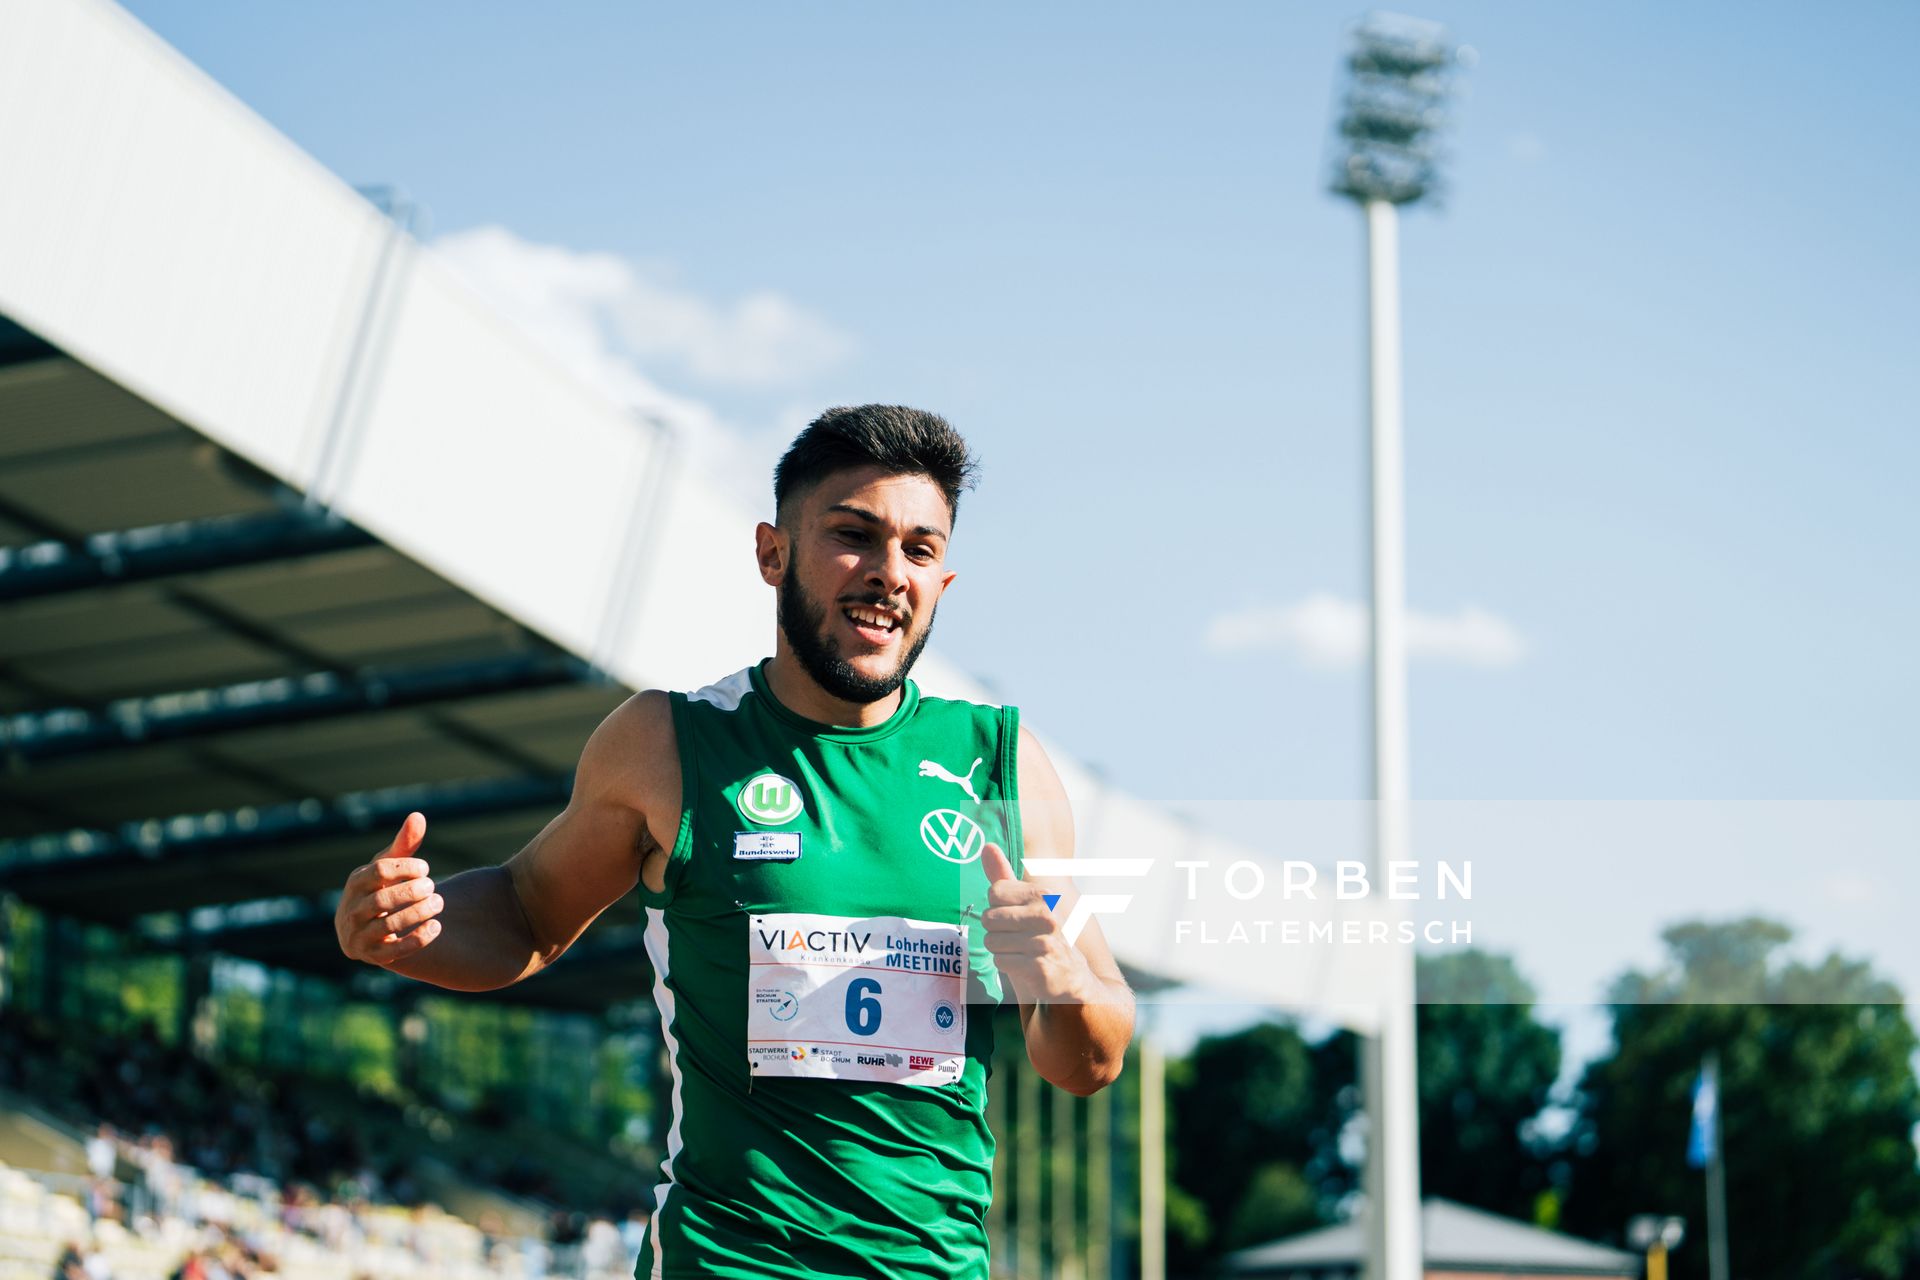 Deniz Almas (VfL Wolfsburg) ueber 100m am 06.08.2022 beim Lohrheide-Meeting im Lohrheidestadion in Bochum-Wattenscheid